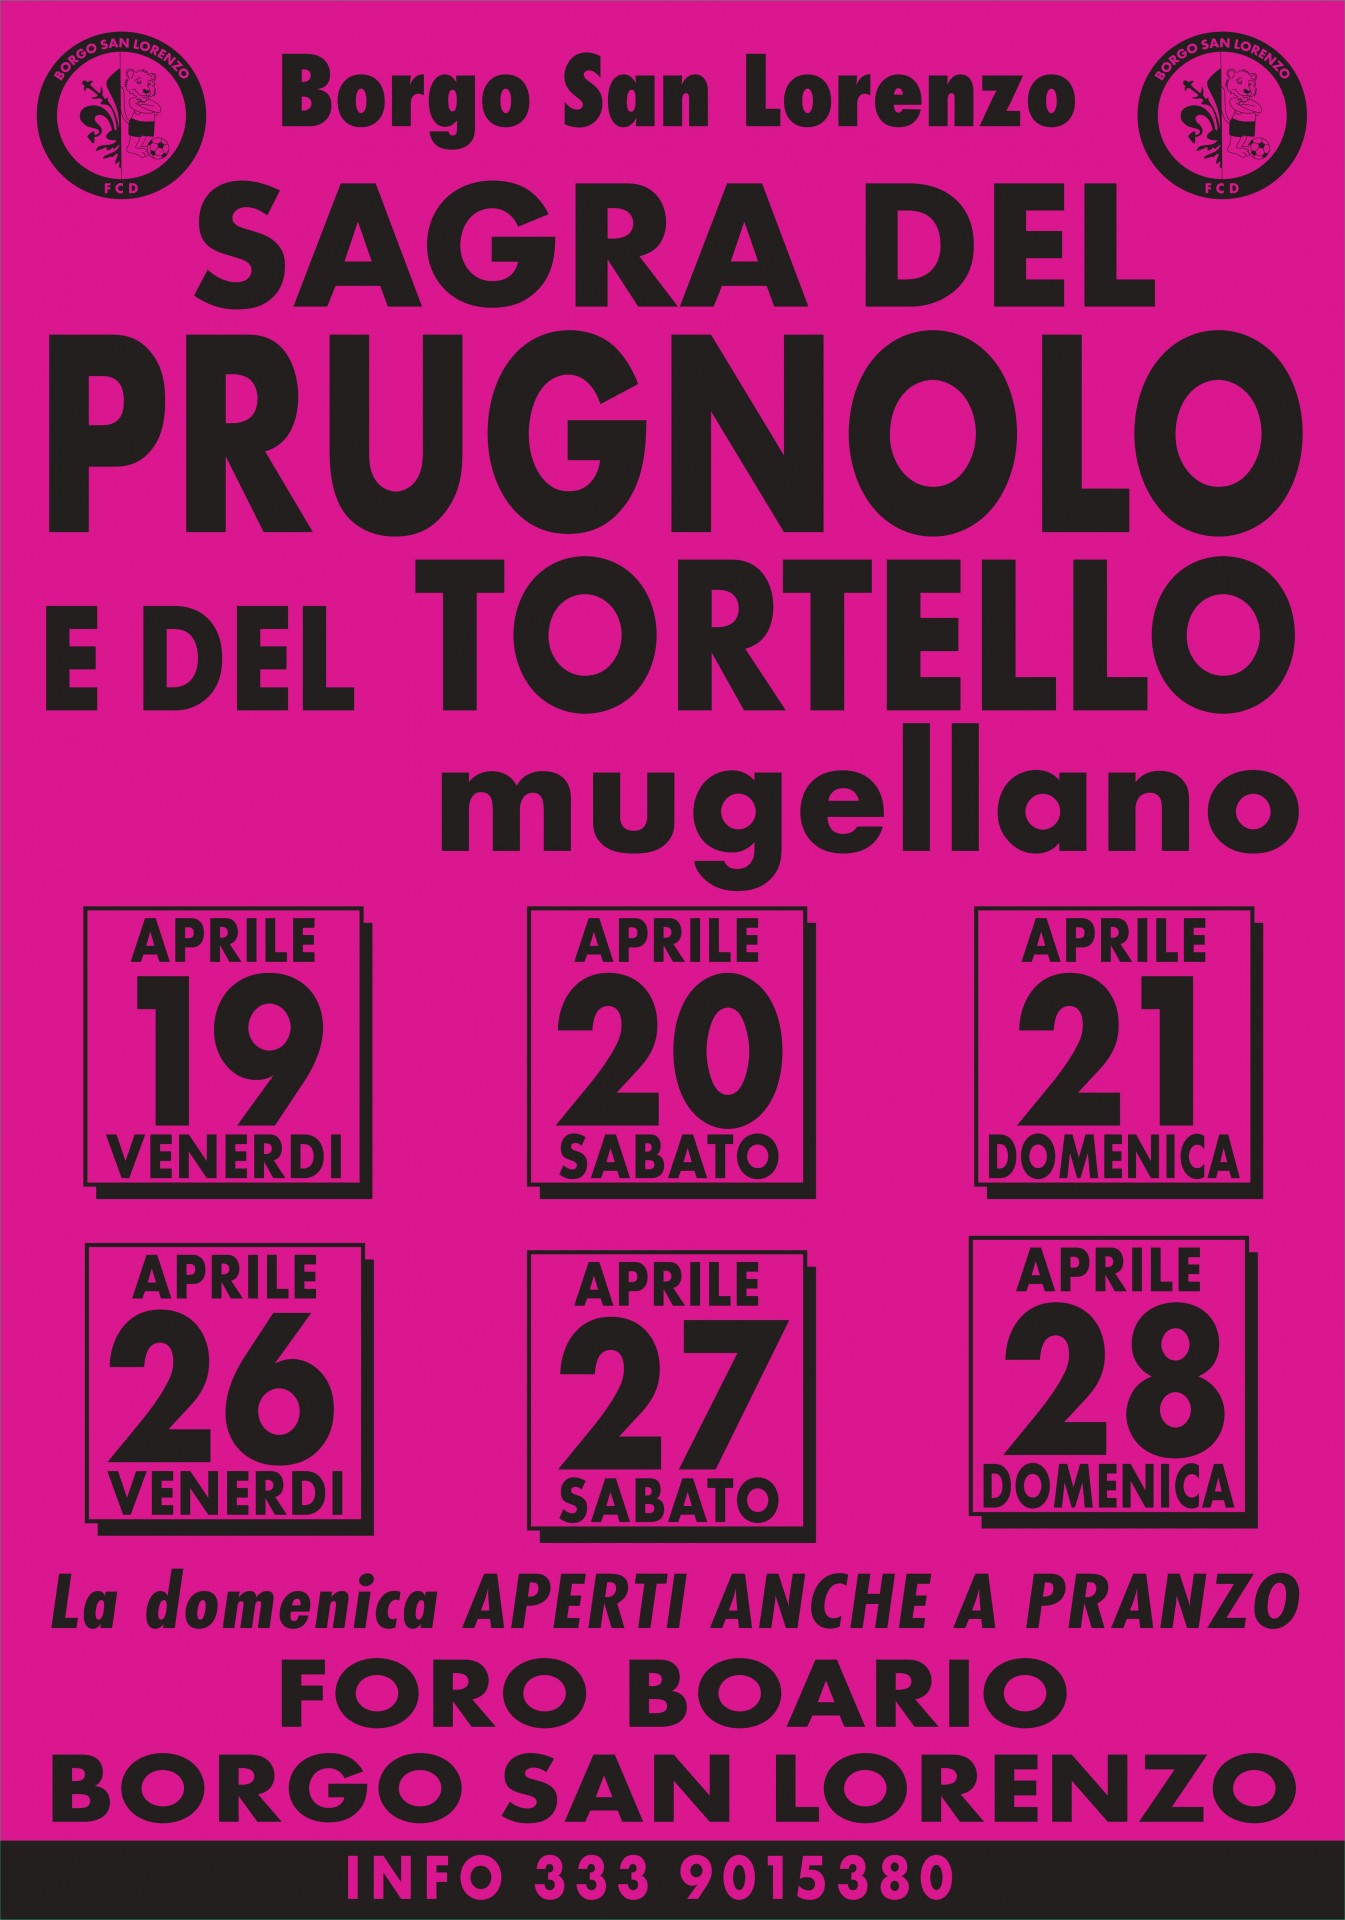 Sagra del Prugnolo e del Tortello Mugellano a Borgo San Lorenzo (FI)